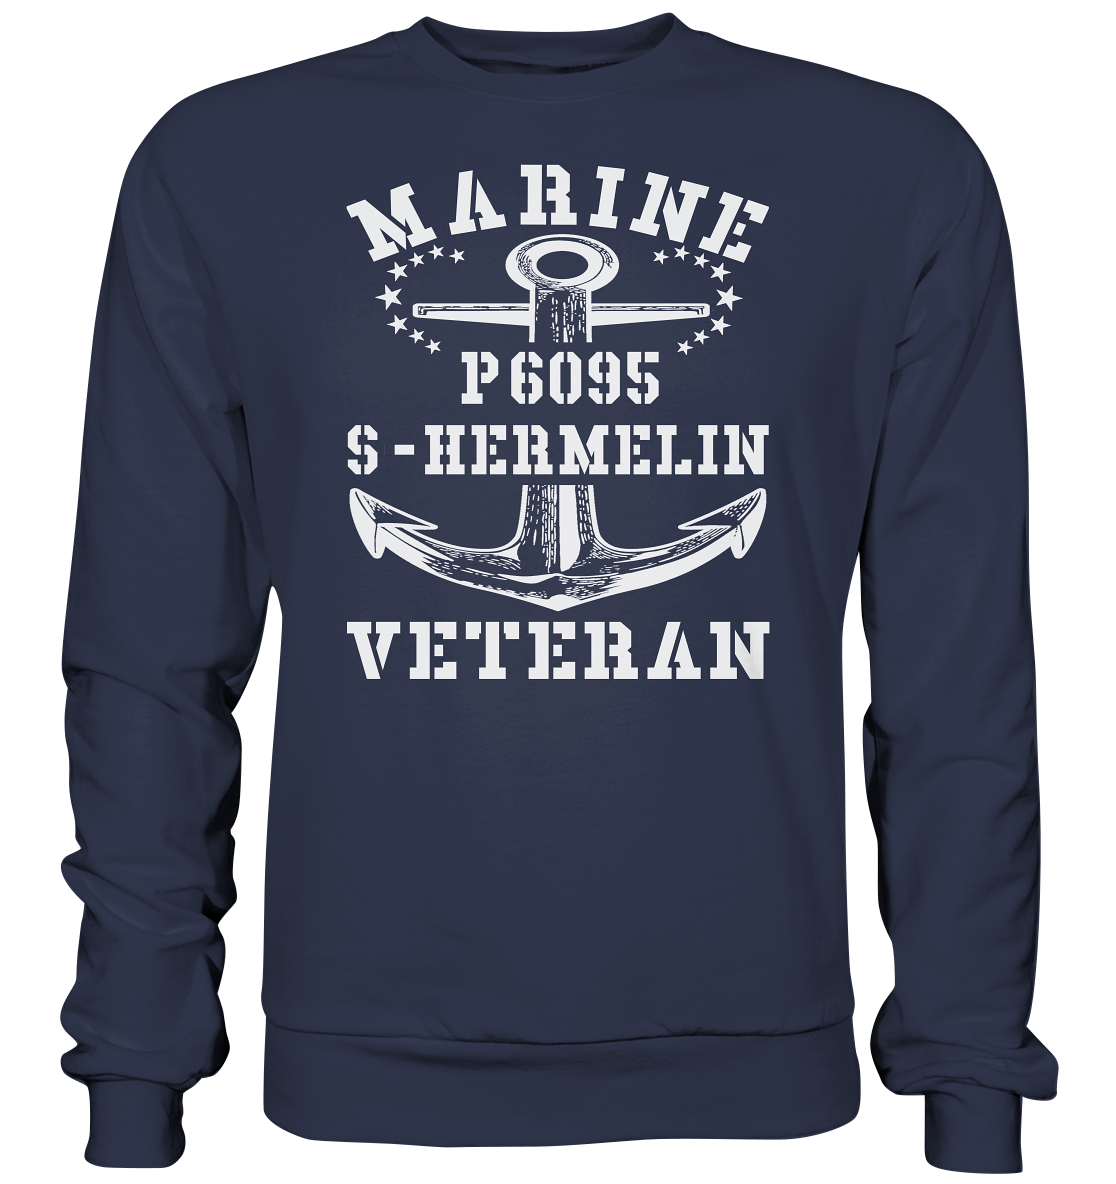 P6095 S-HERMELIN Marine Veteran - Premium Sweatshirt